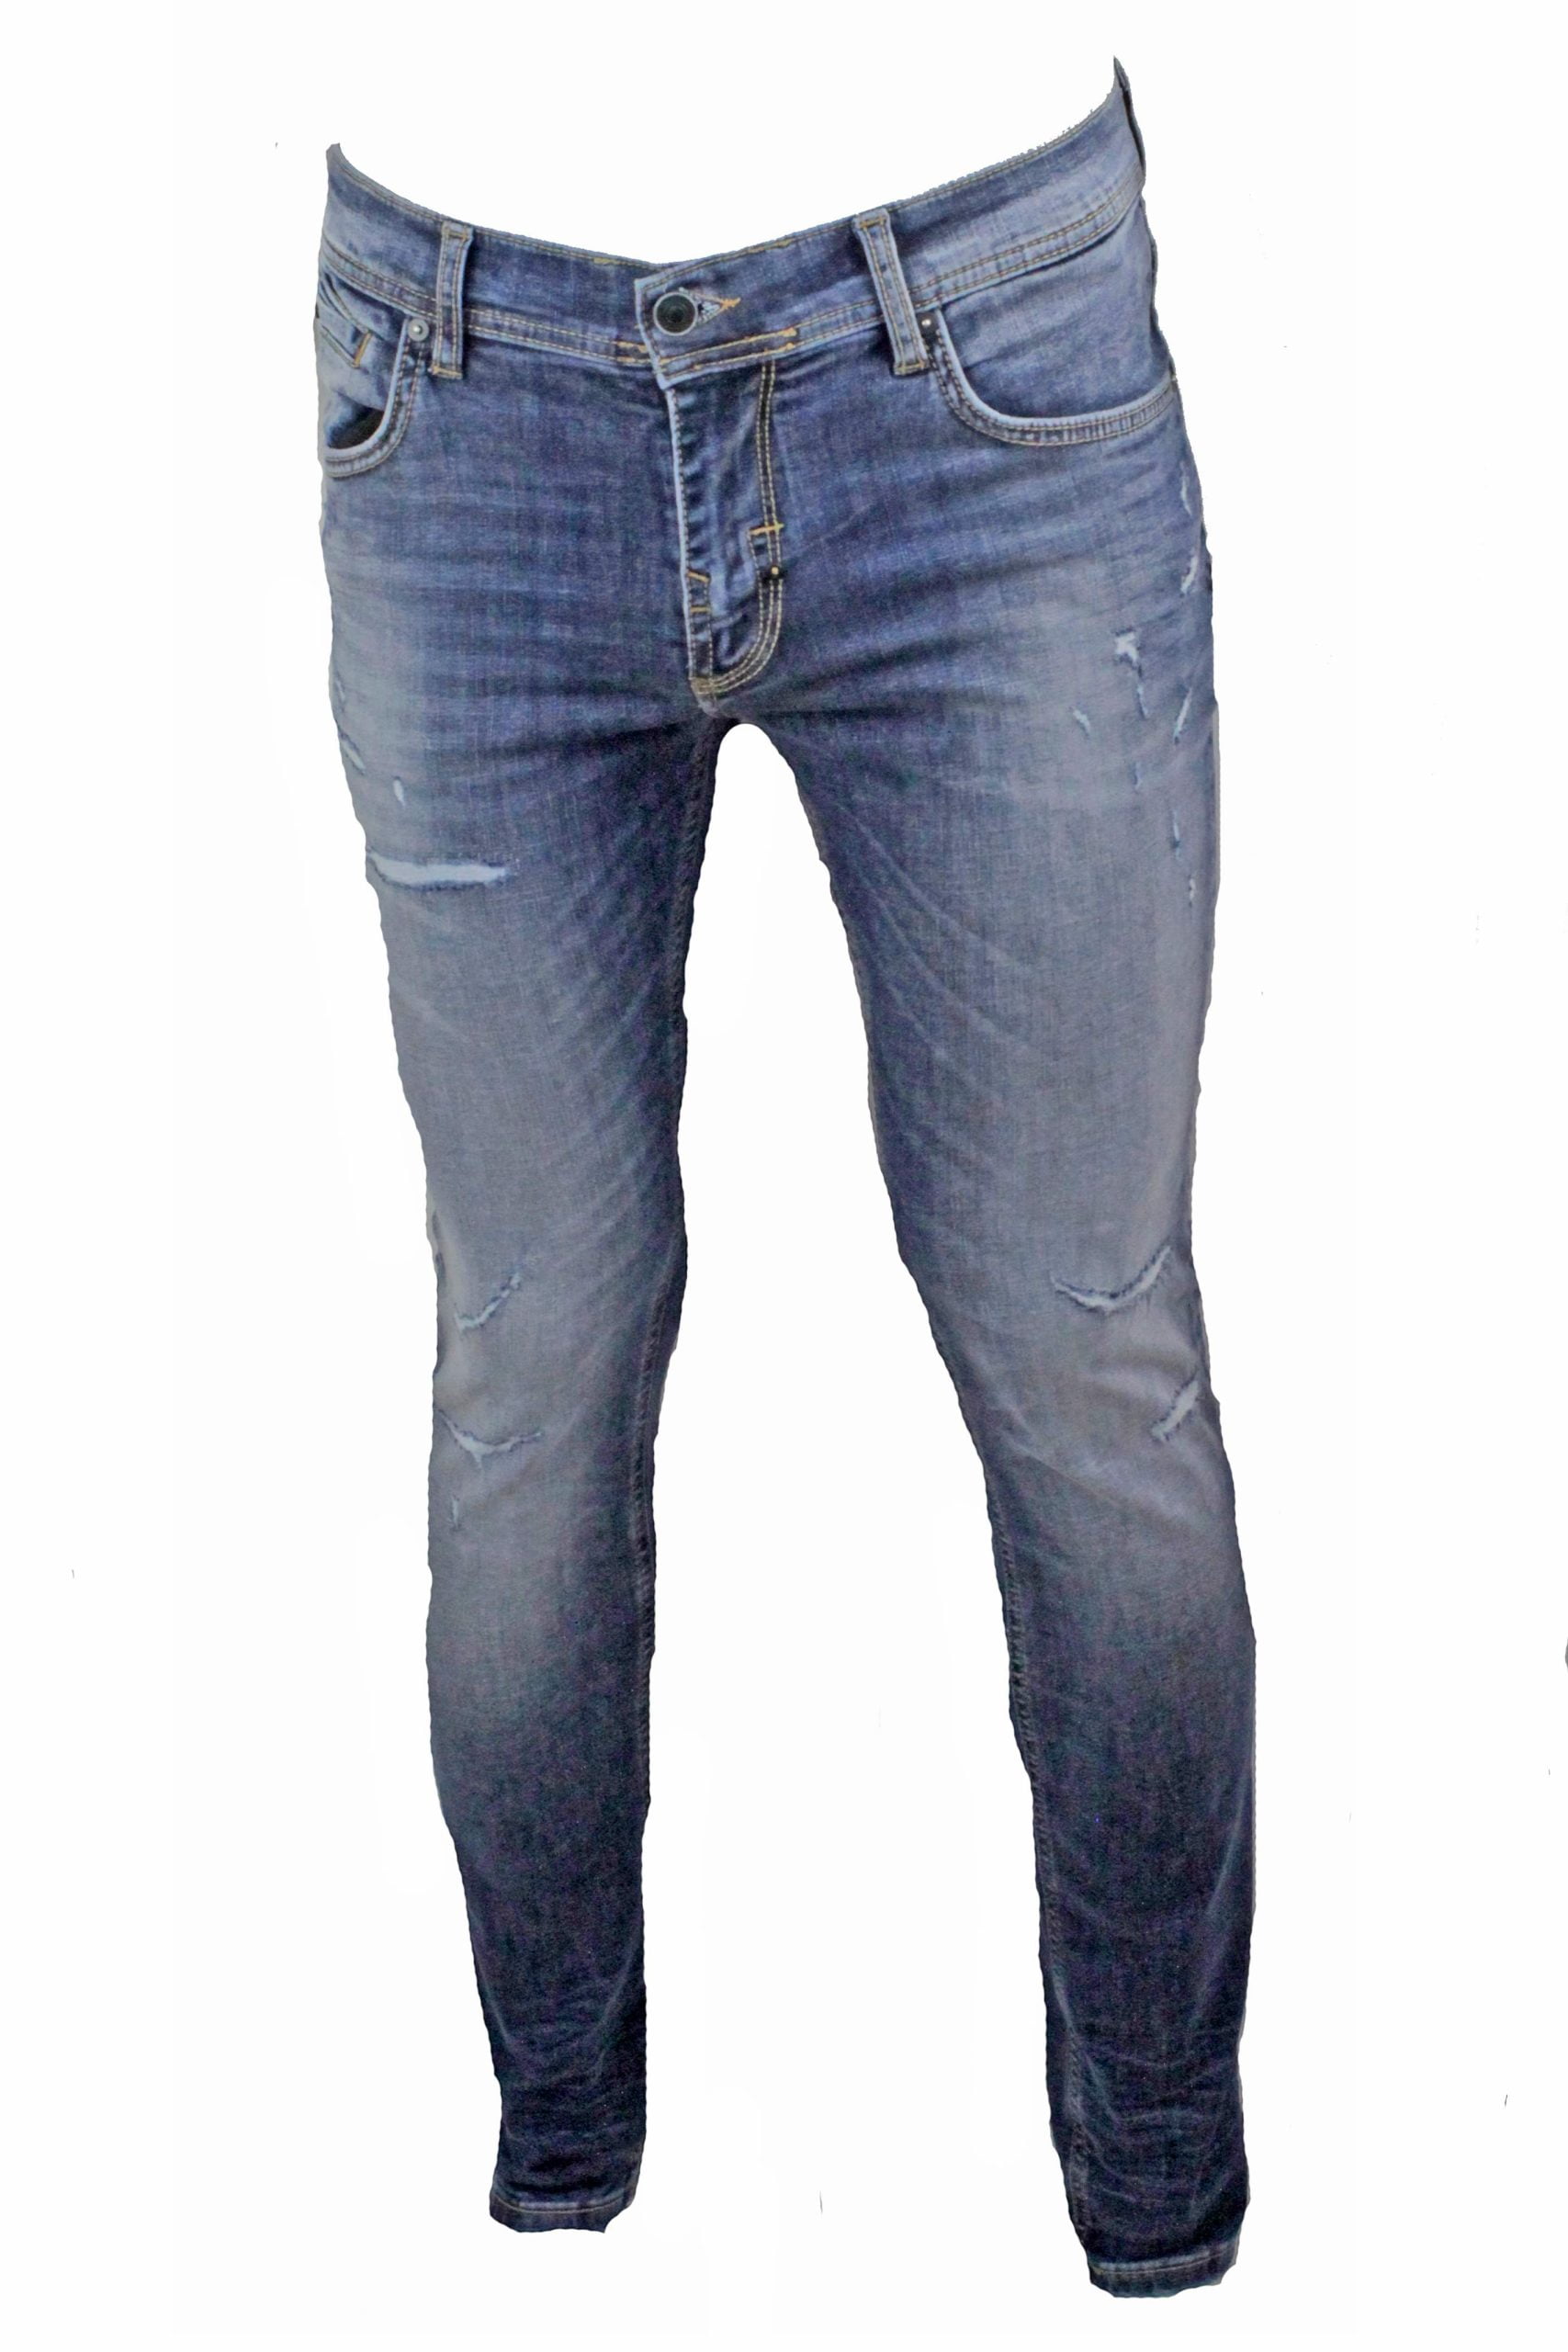 Antony Morato Jeans Gilmour Super Skinny Blue Denim